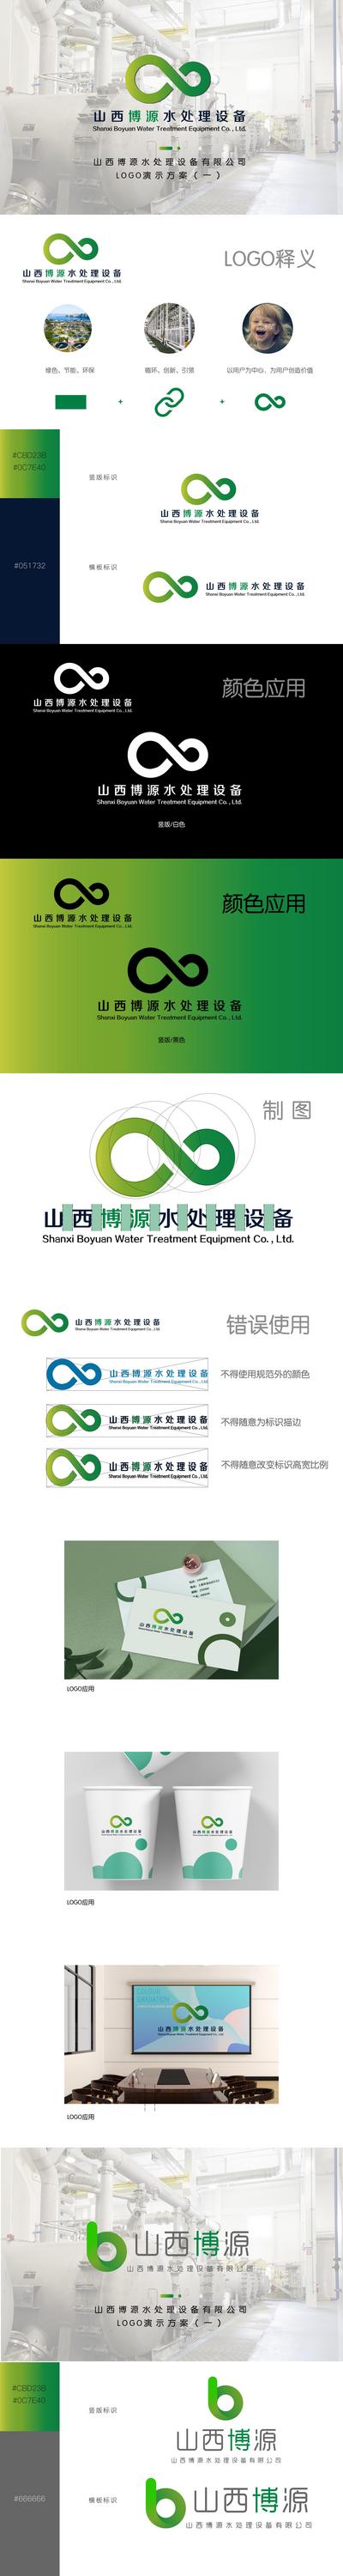 南门网 VI 提案 logo设计 样机 纸杯 环保 生态